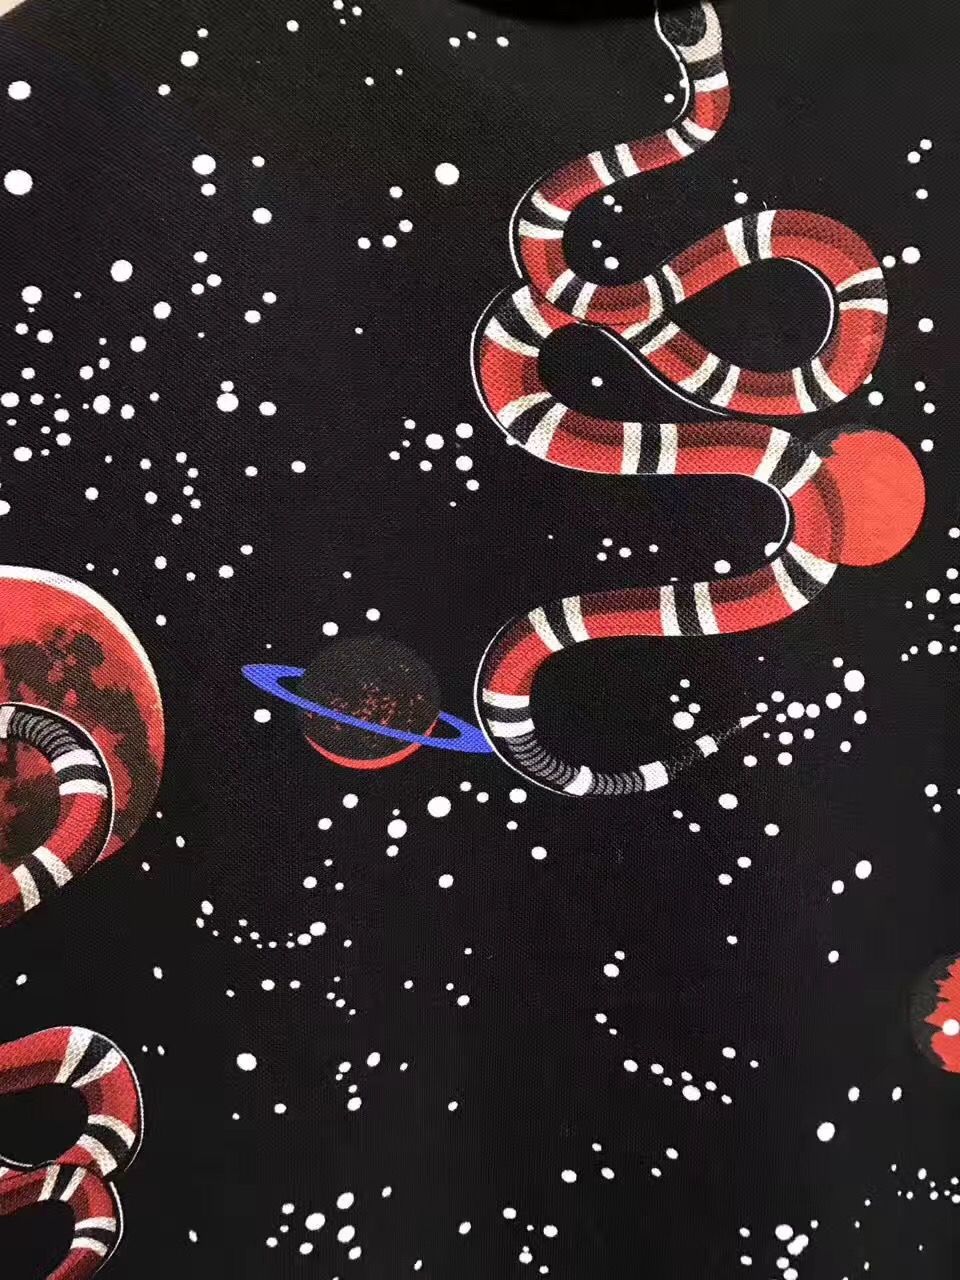 Beautiful Snake Wallpaper Gucci Pattern